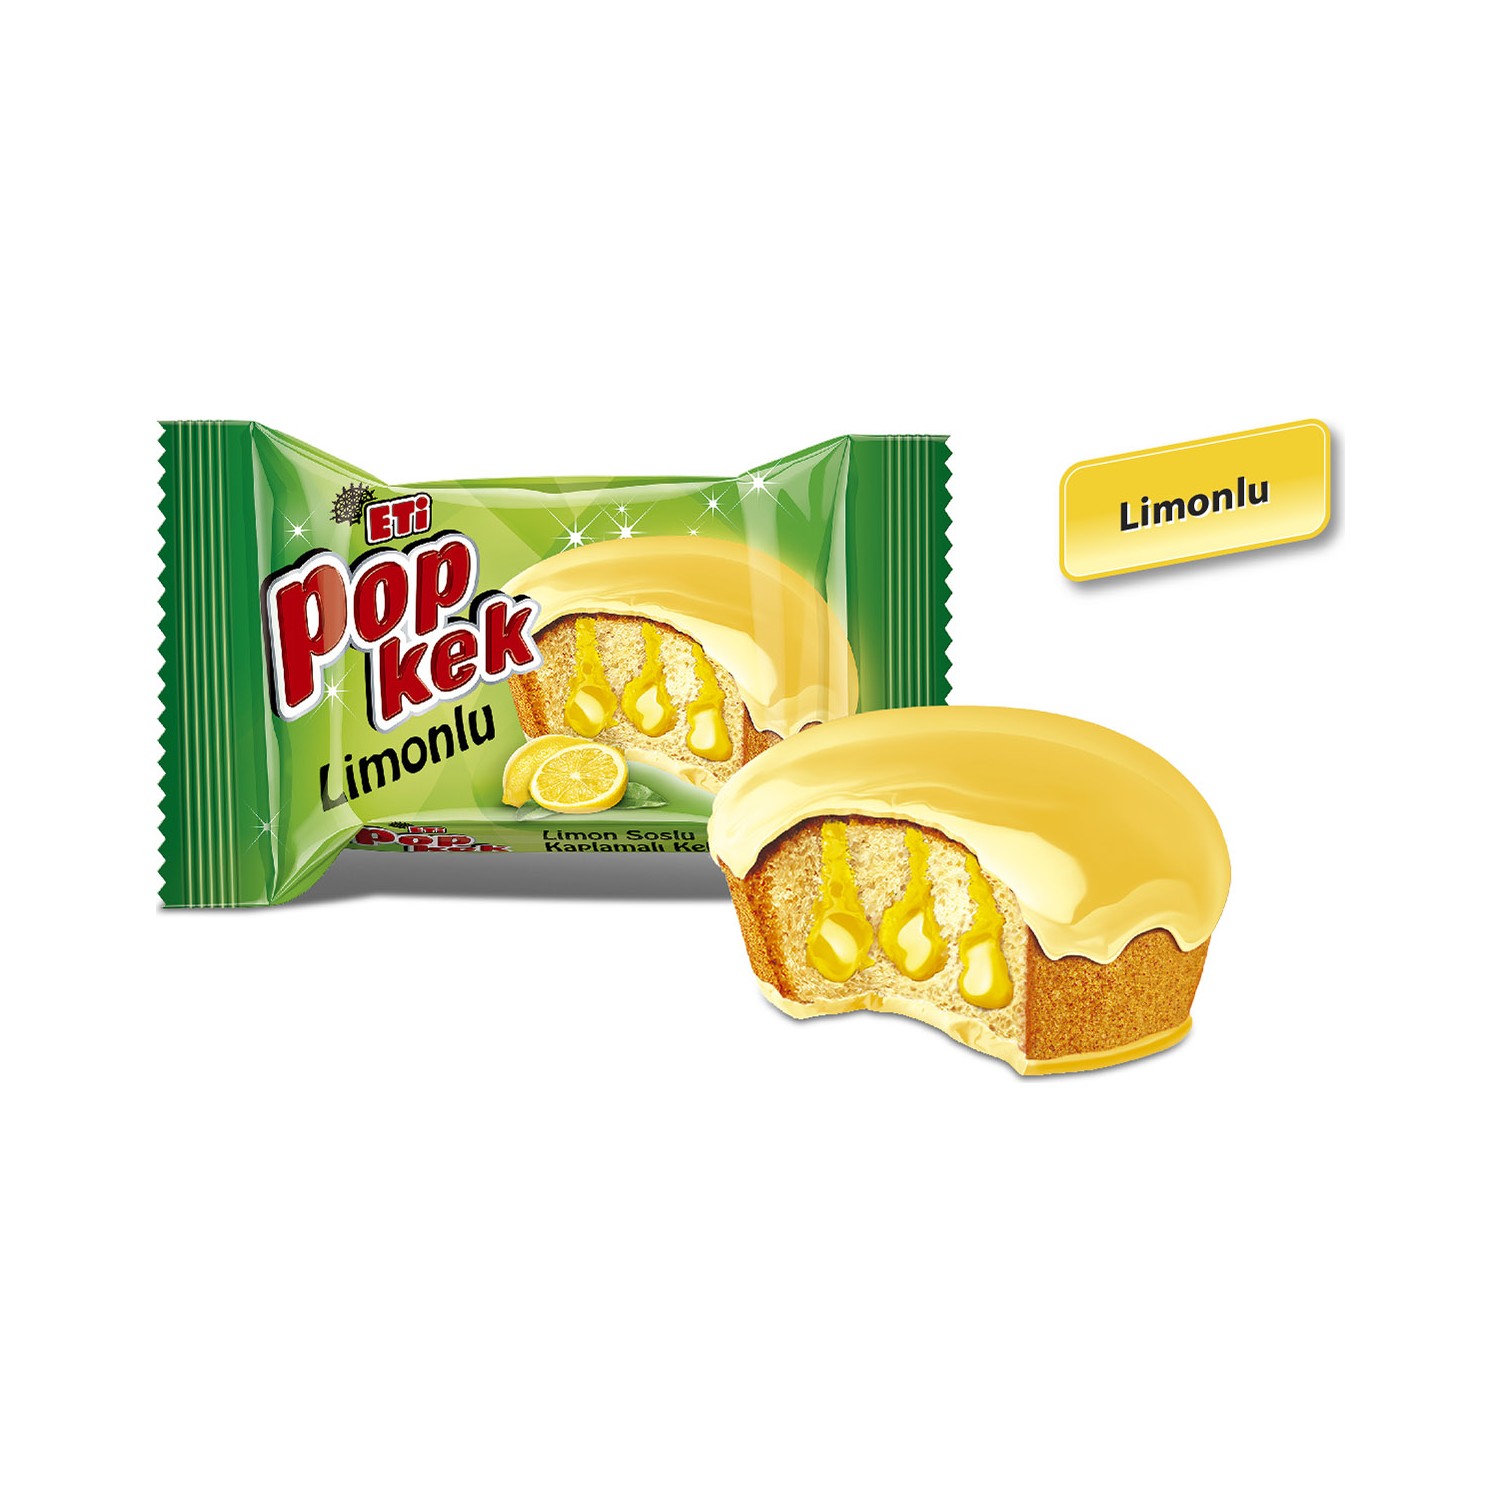 Eti Popkek Limonlu 60 g x 24 Adet Fiyatı Taksit Seçenekleri